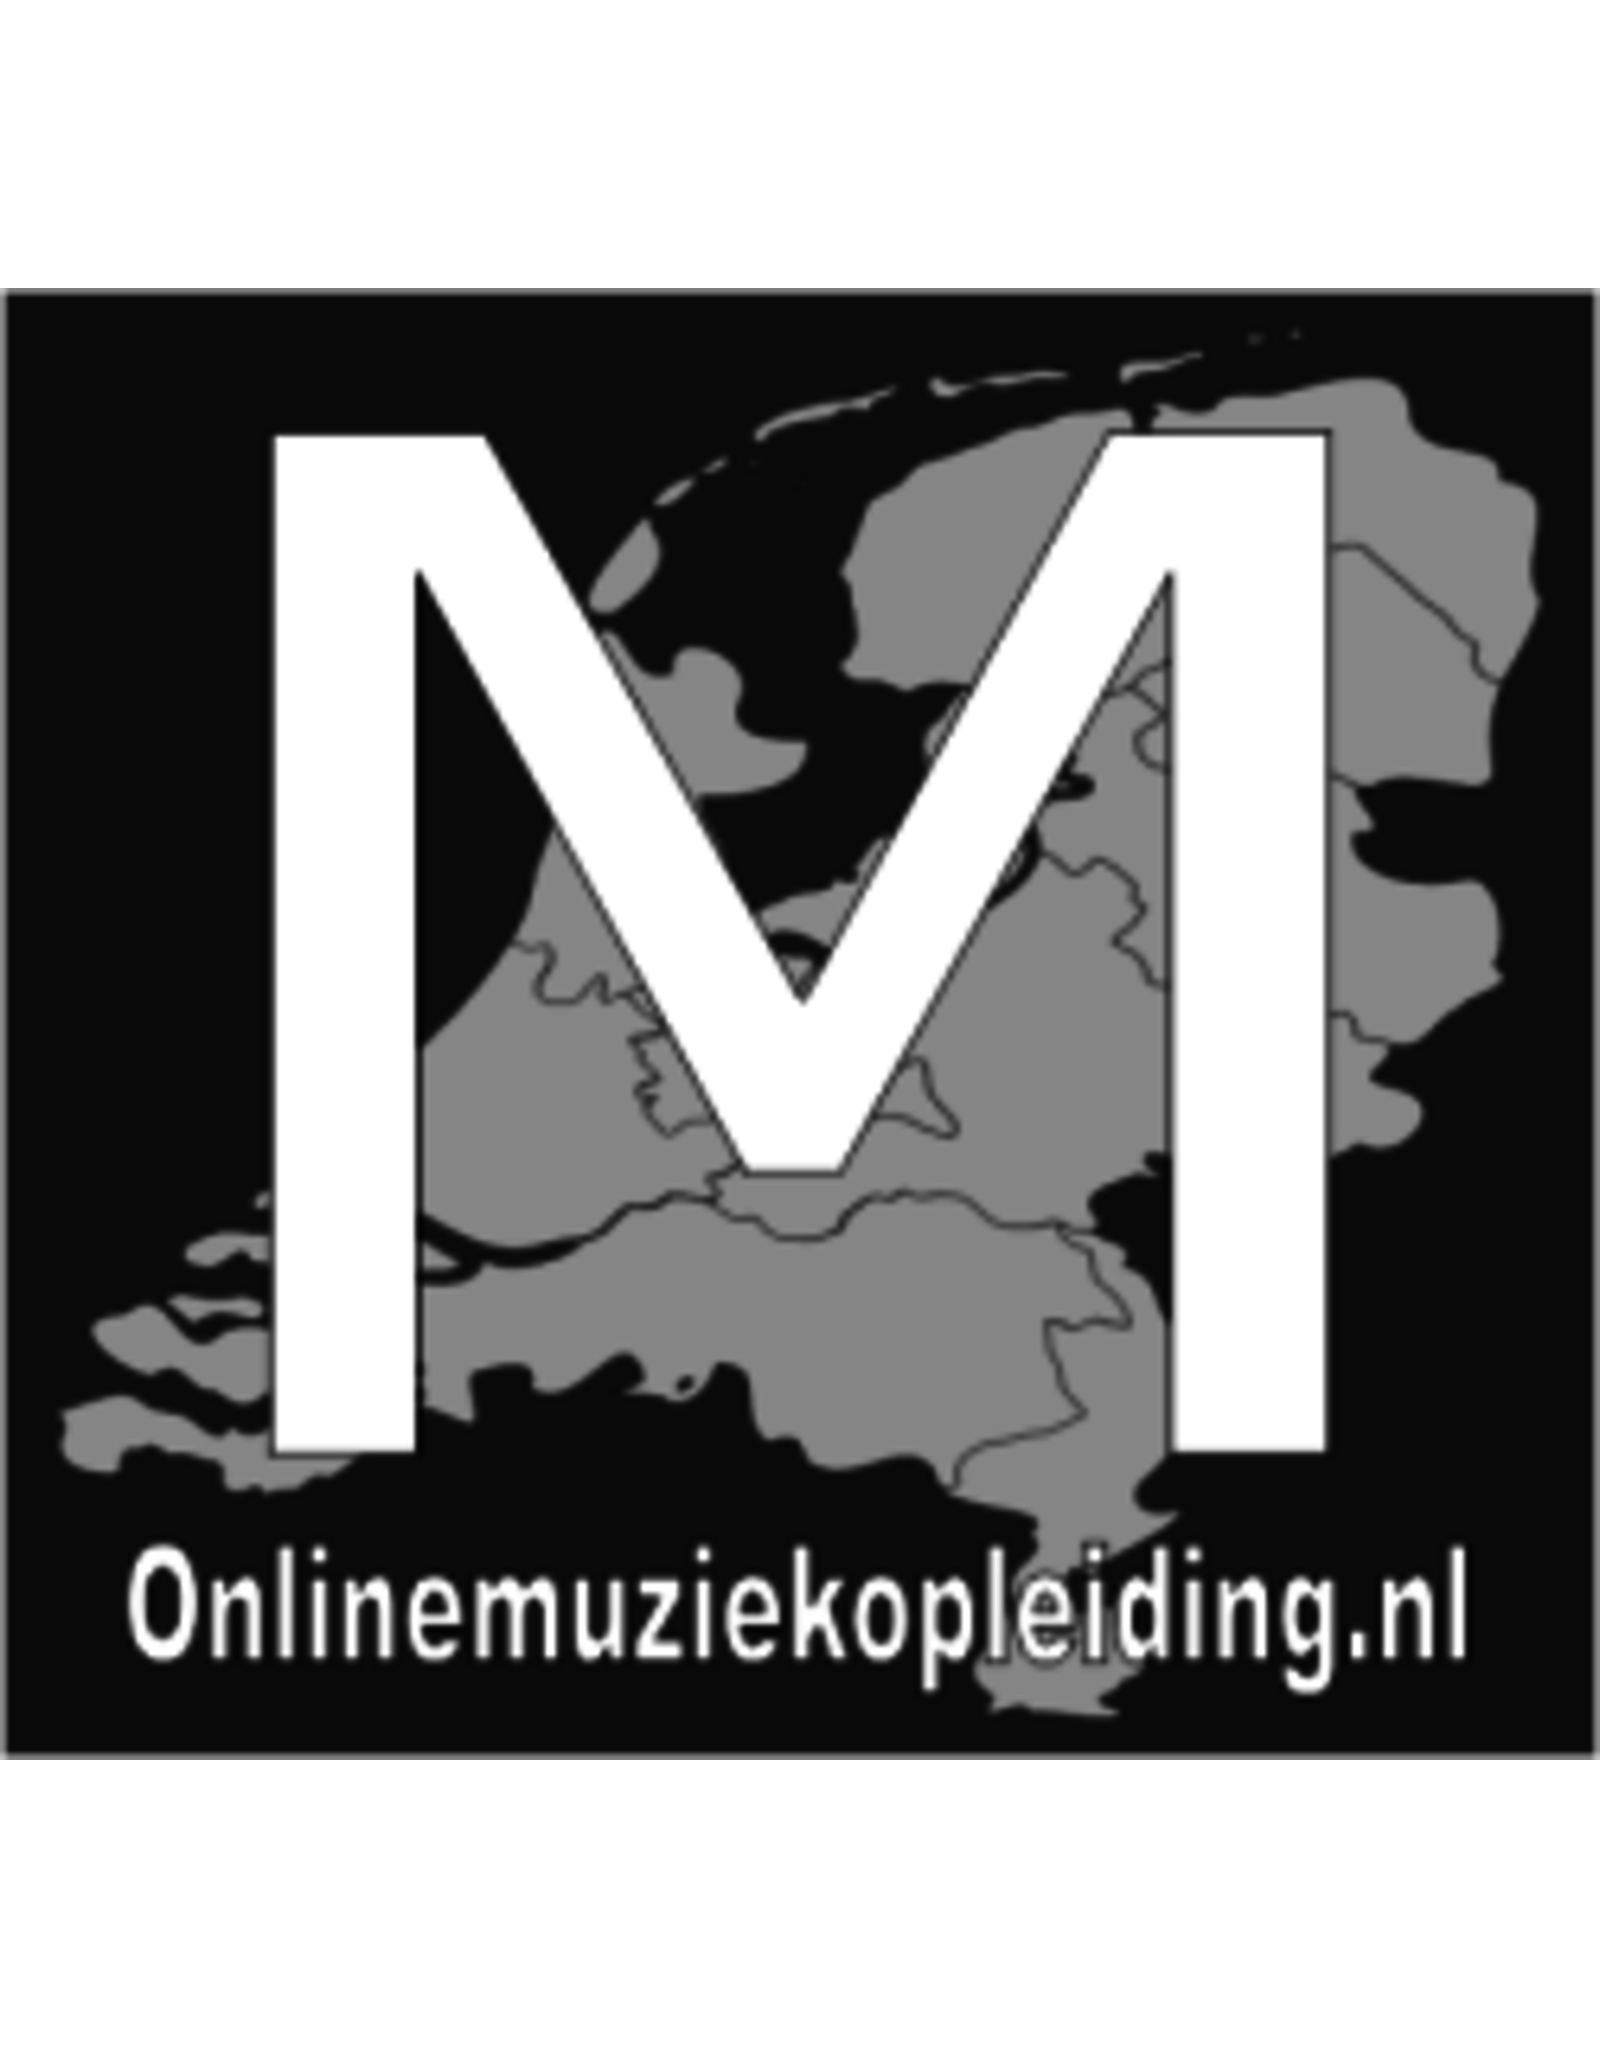 Online Muziekopleiding Dwarsfluitlessen boven de 21 jaar Online Muziekopleiding